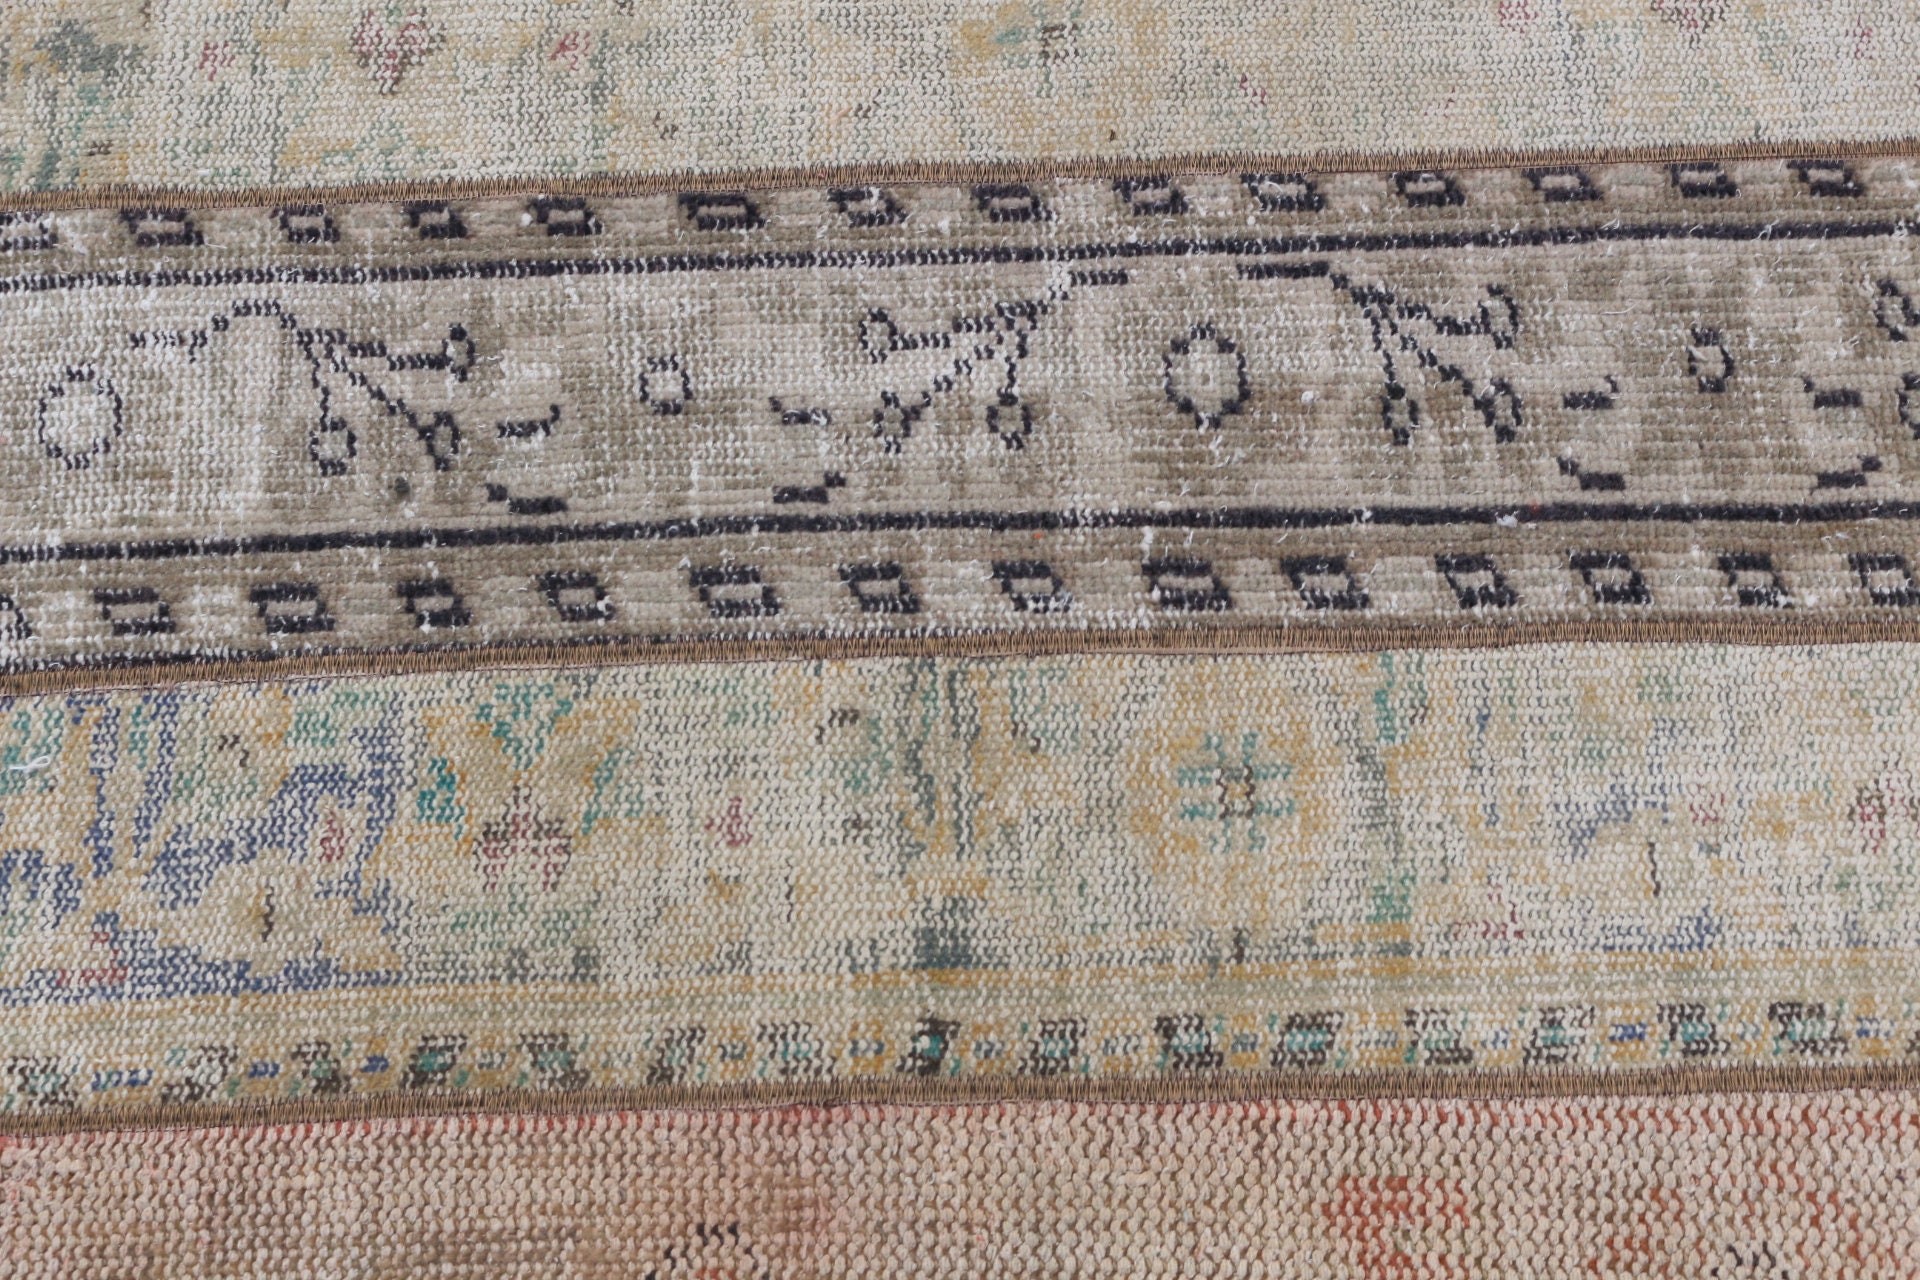 Oriental Rugs, 2.7x3.5 ft Small Rugs, Floor Rug, Rugs for Entry, Brown Wool Rug, Bathroom Rug, Wall Hanging Rug, Turkish Rugs, Vintage Rug